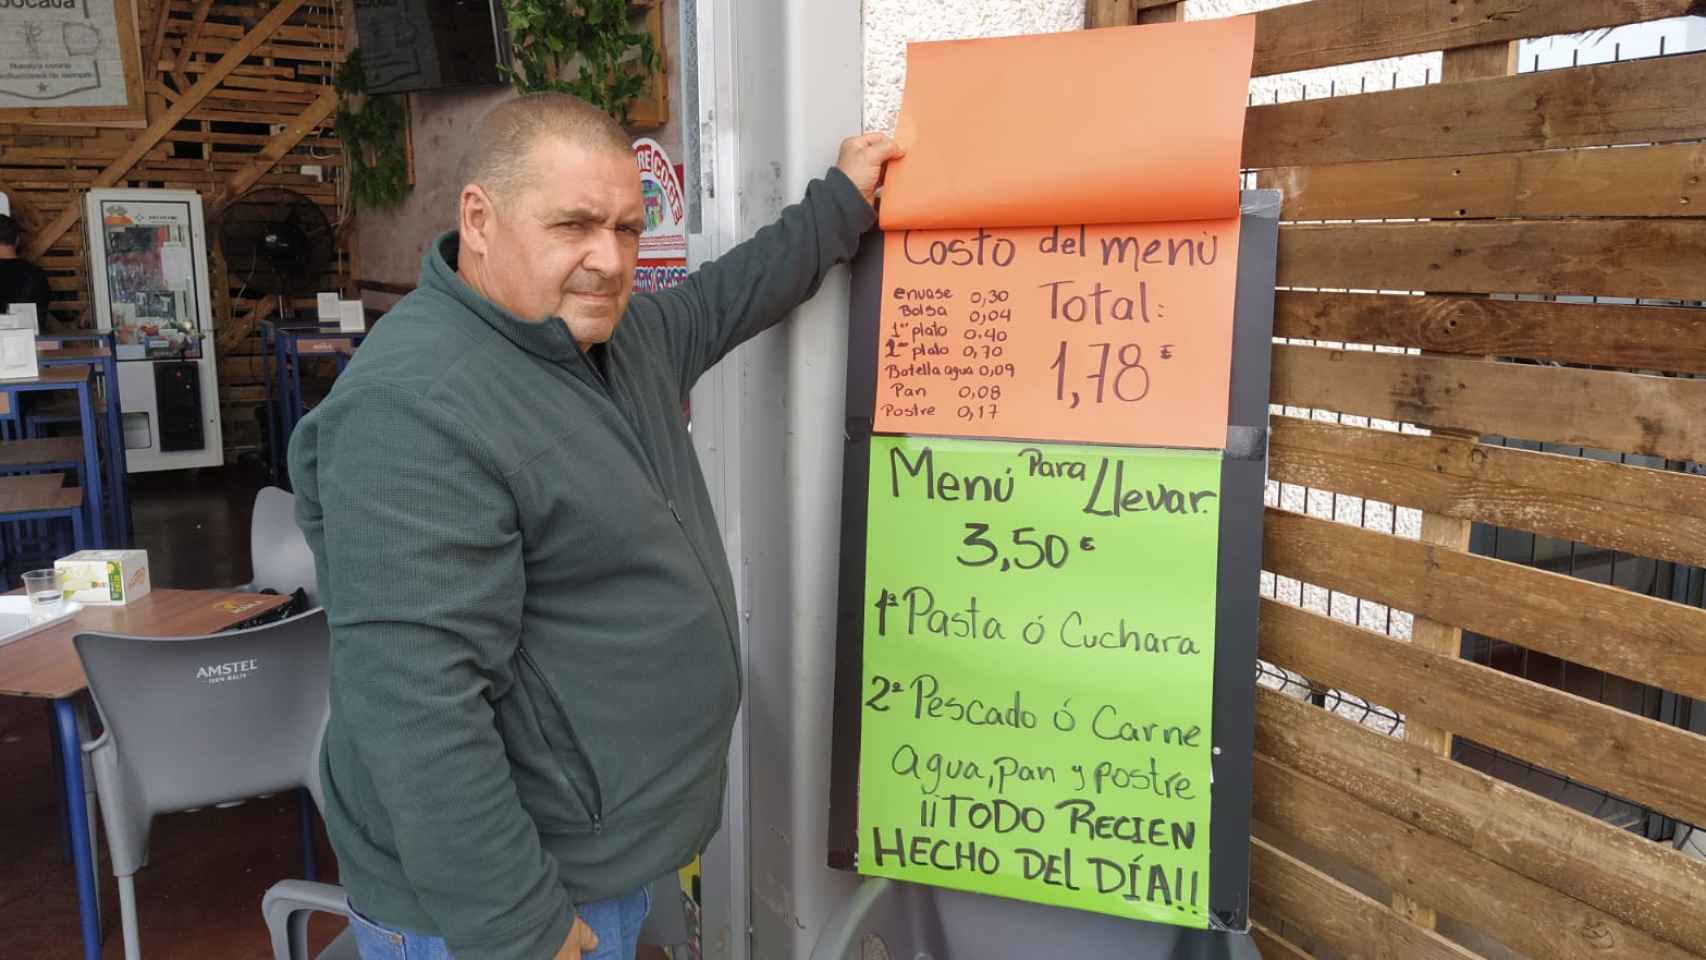 Carlos Moreno, enseñando el cartel que asegura que el costo del menú de 3,50 euros es de 1,78 euros.